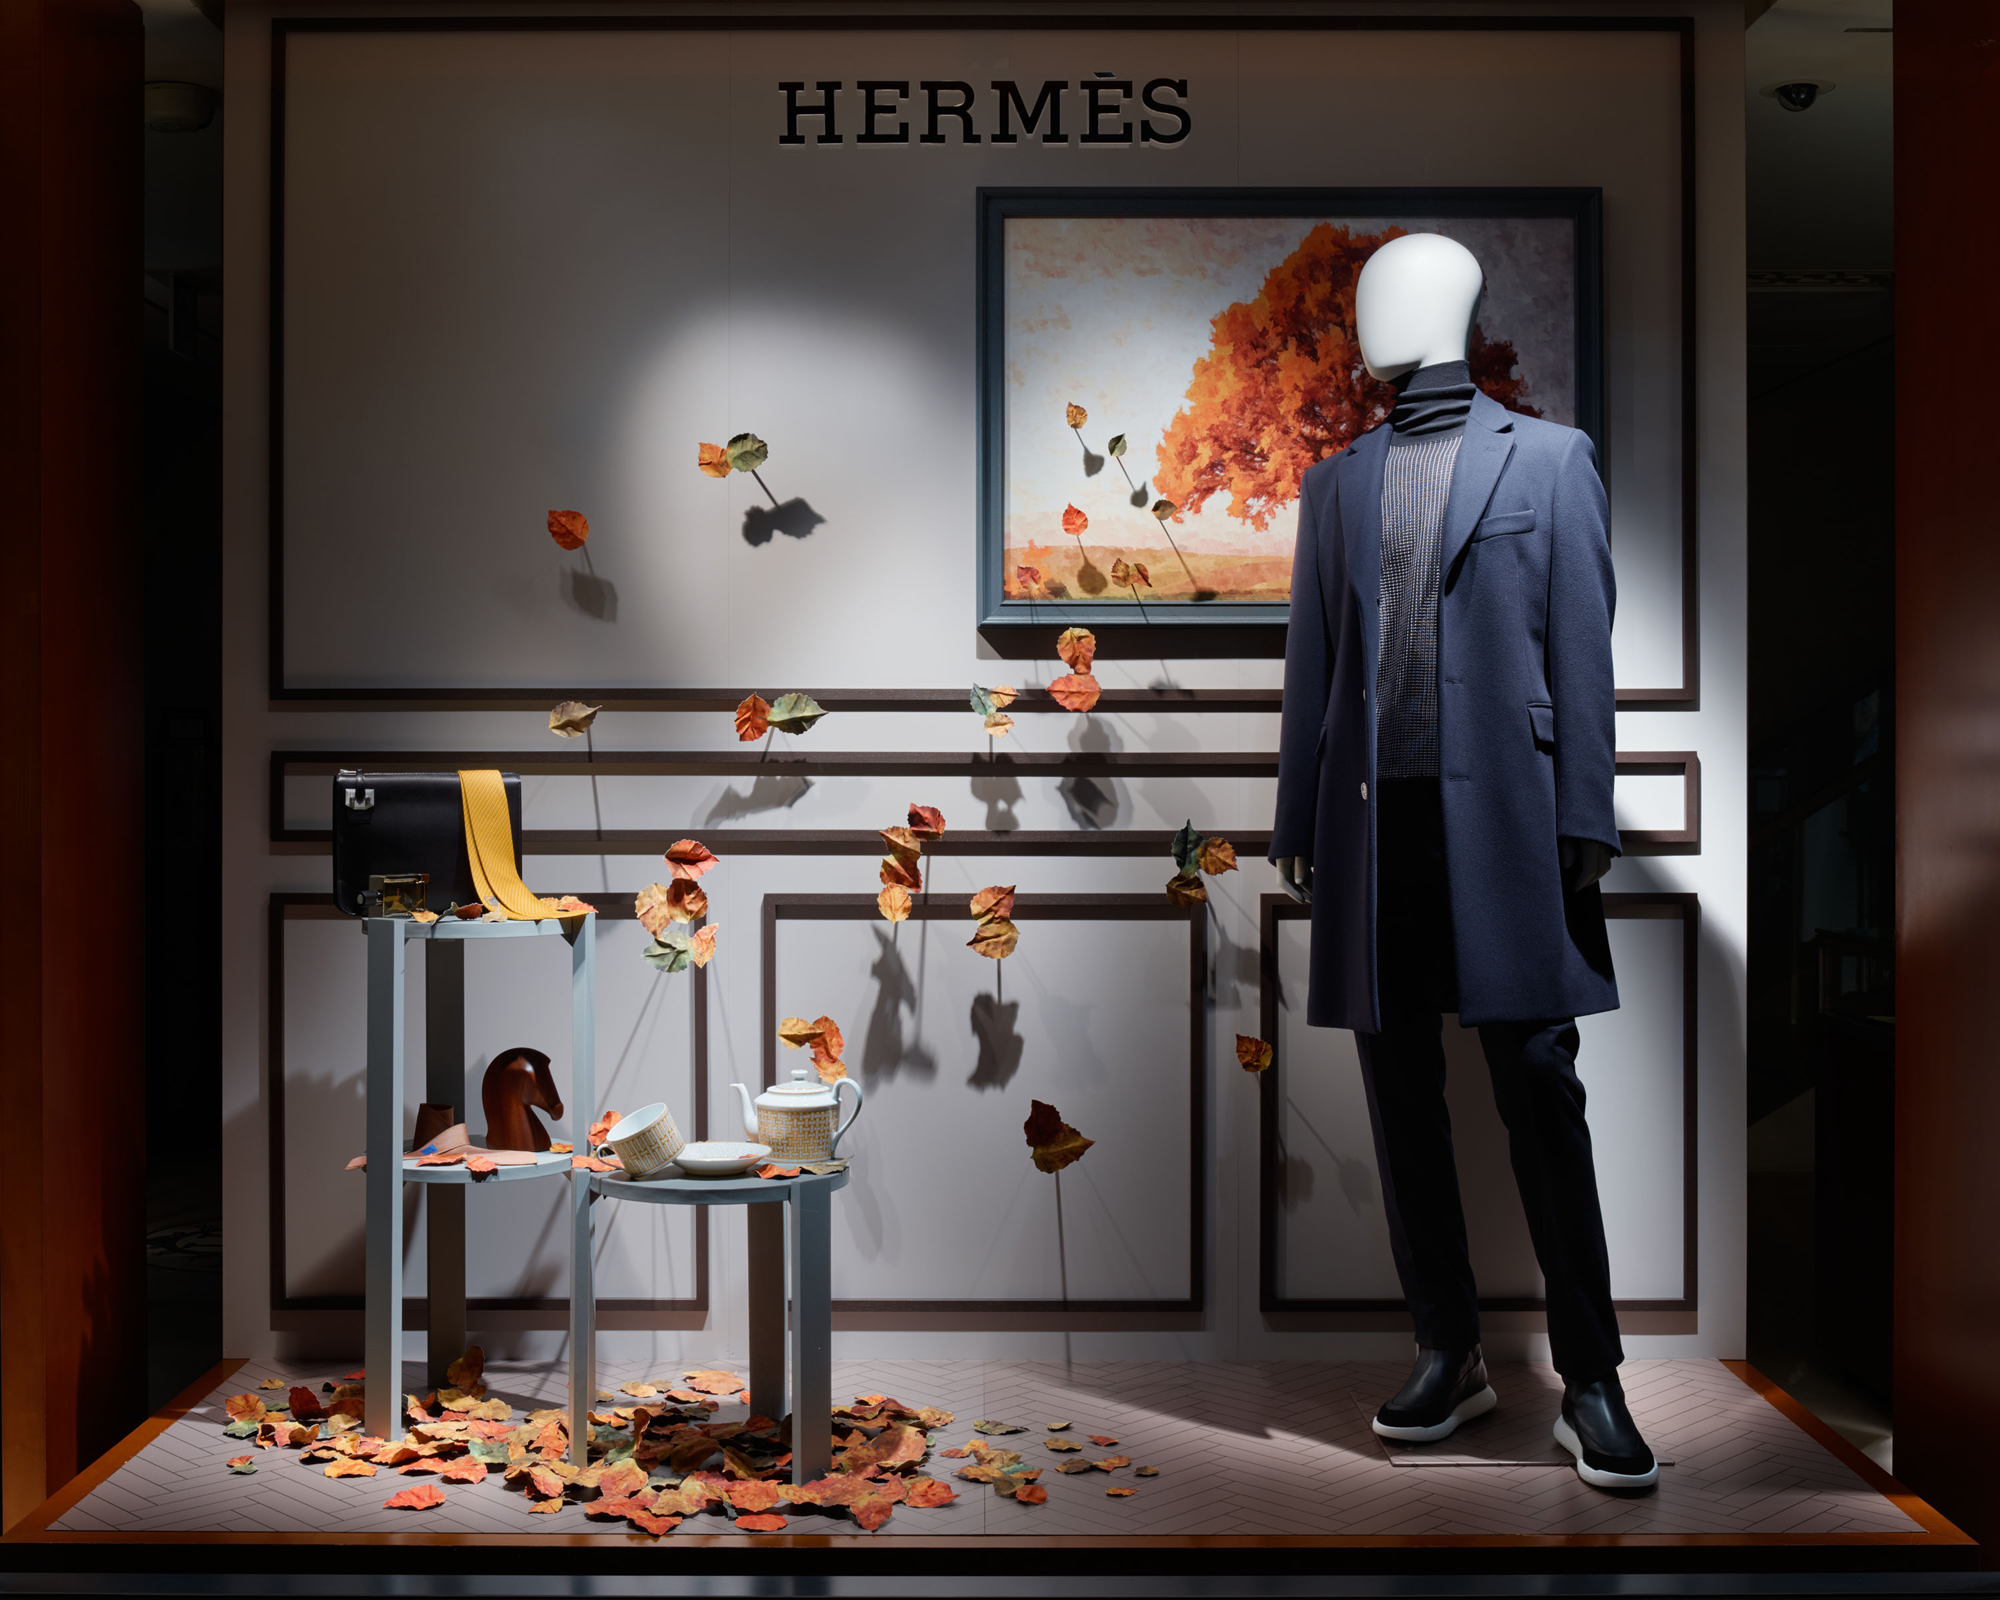 Surreal Retail Display Museums : hermes window display